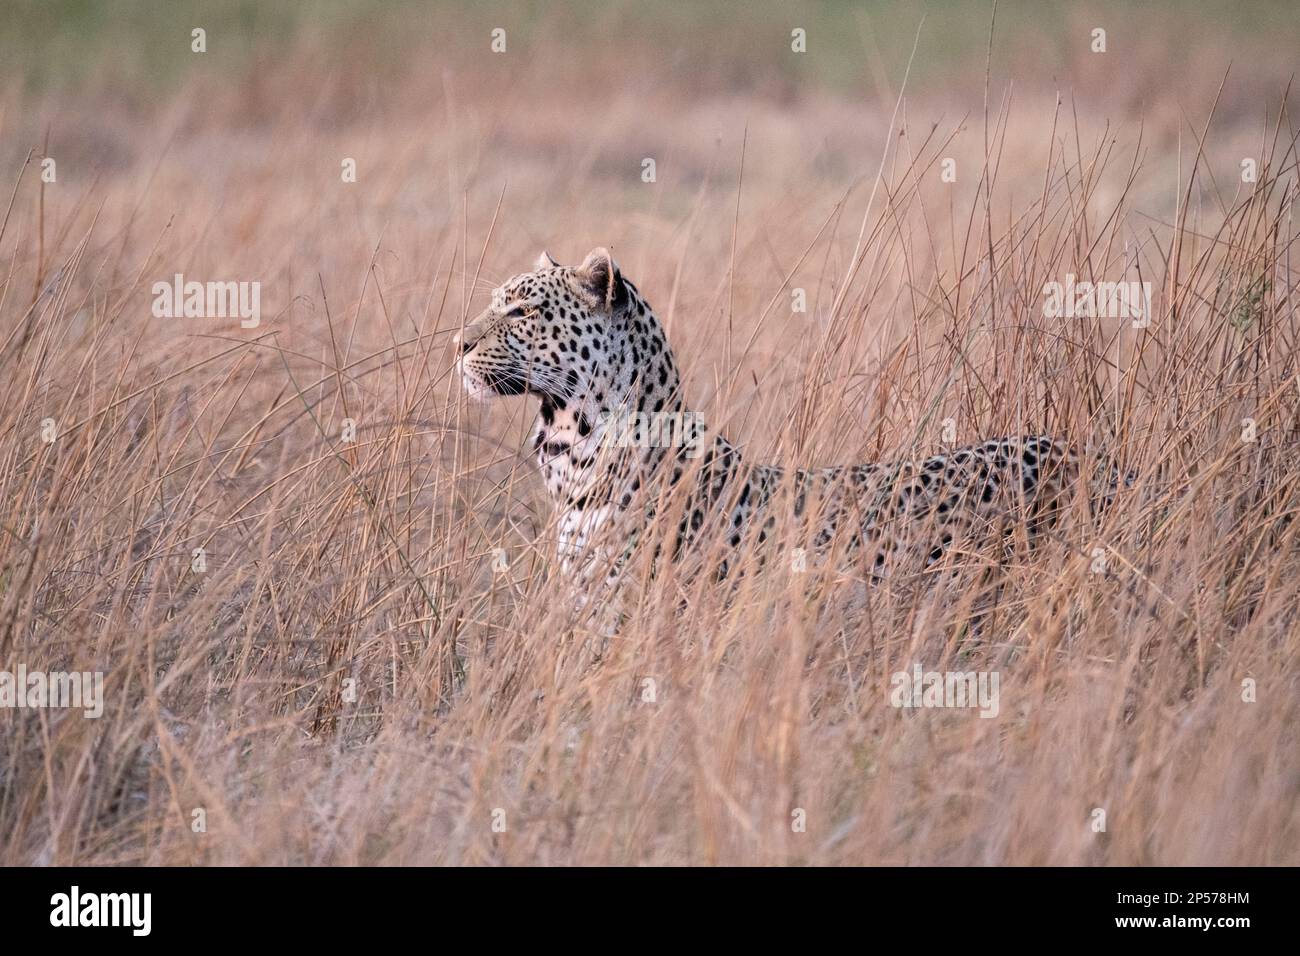 Der Leopard (Panthera pardus) steht im hohen Gras, um von seiner Beute nicht gesehen zu werden. Okavango Delta, Botsuana, Afrika Stockfoto